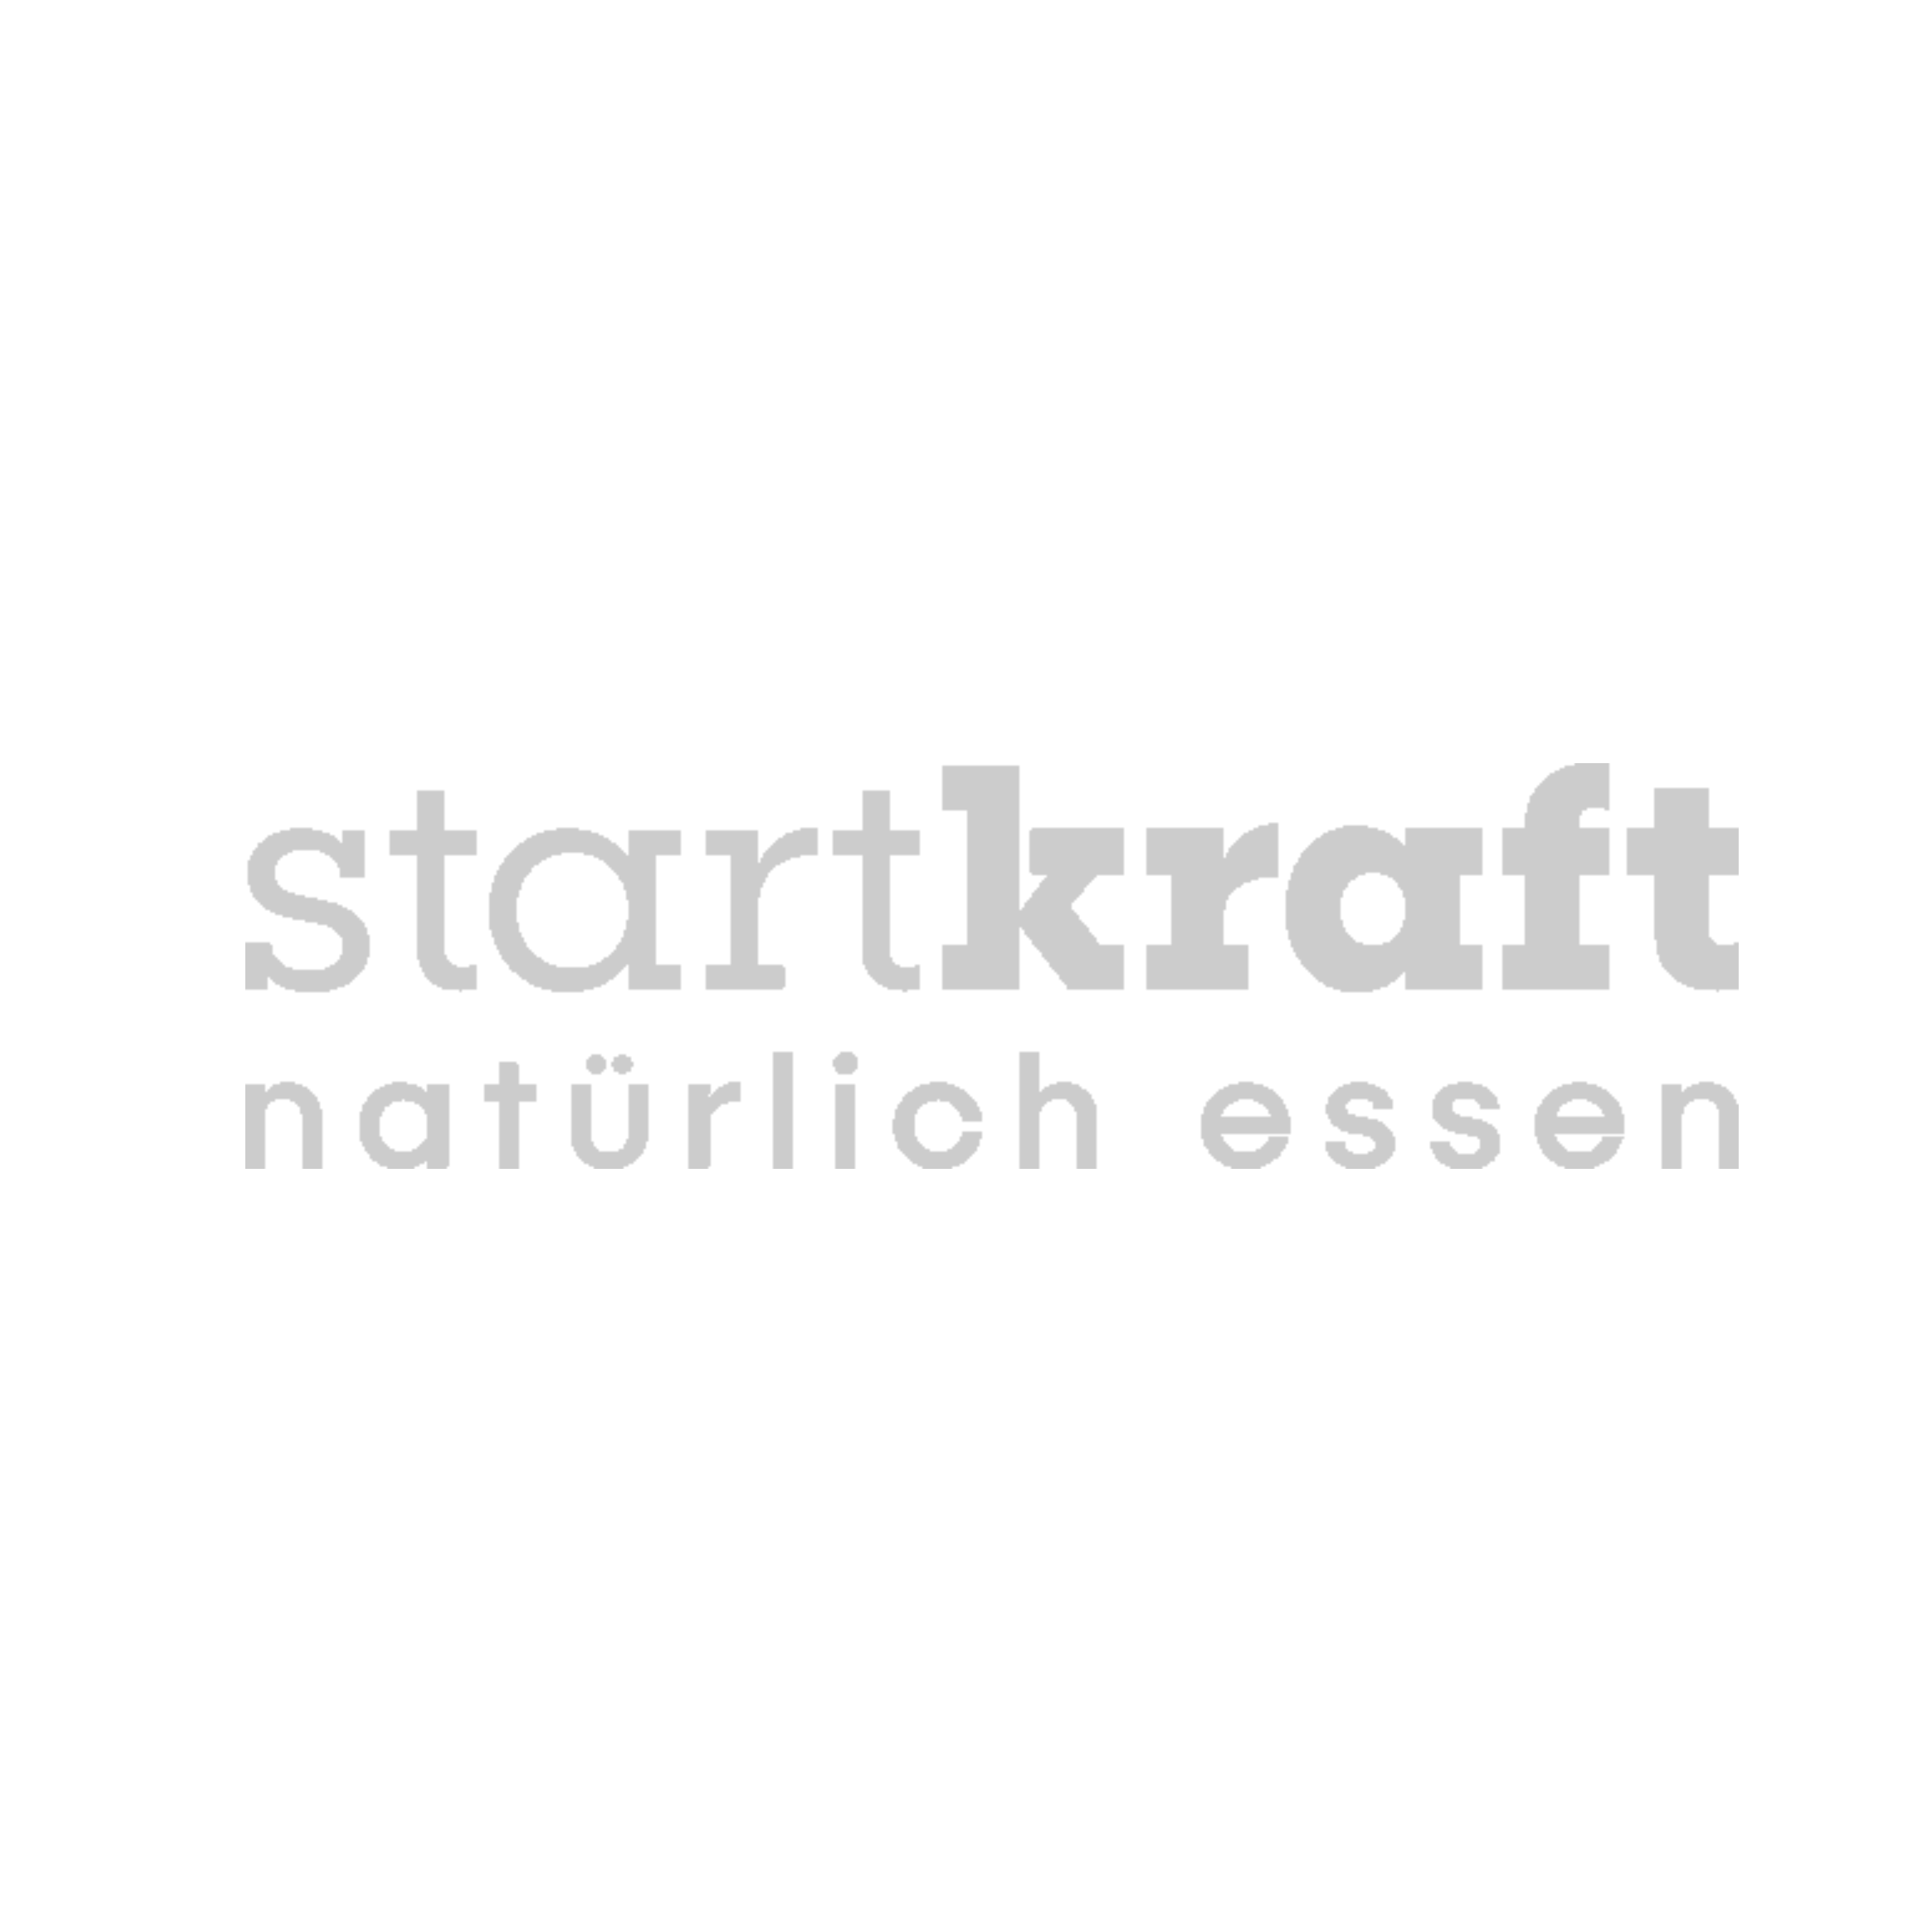 Startkraft logo